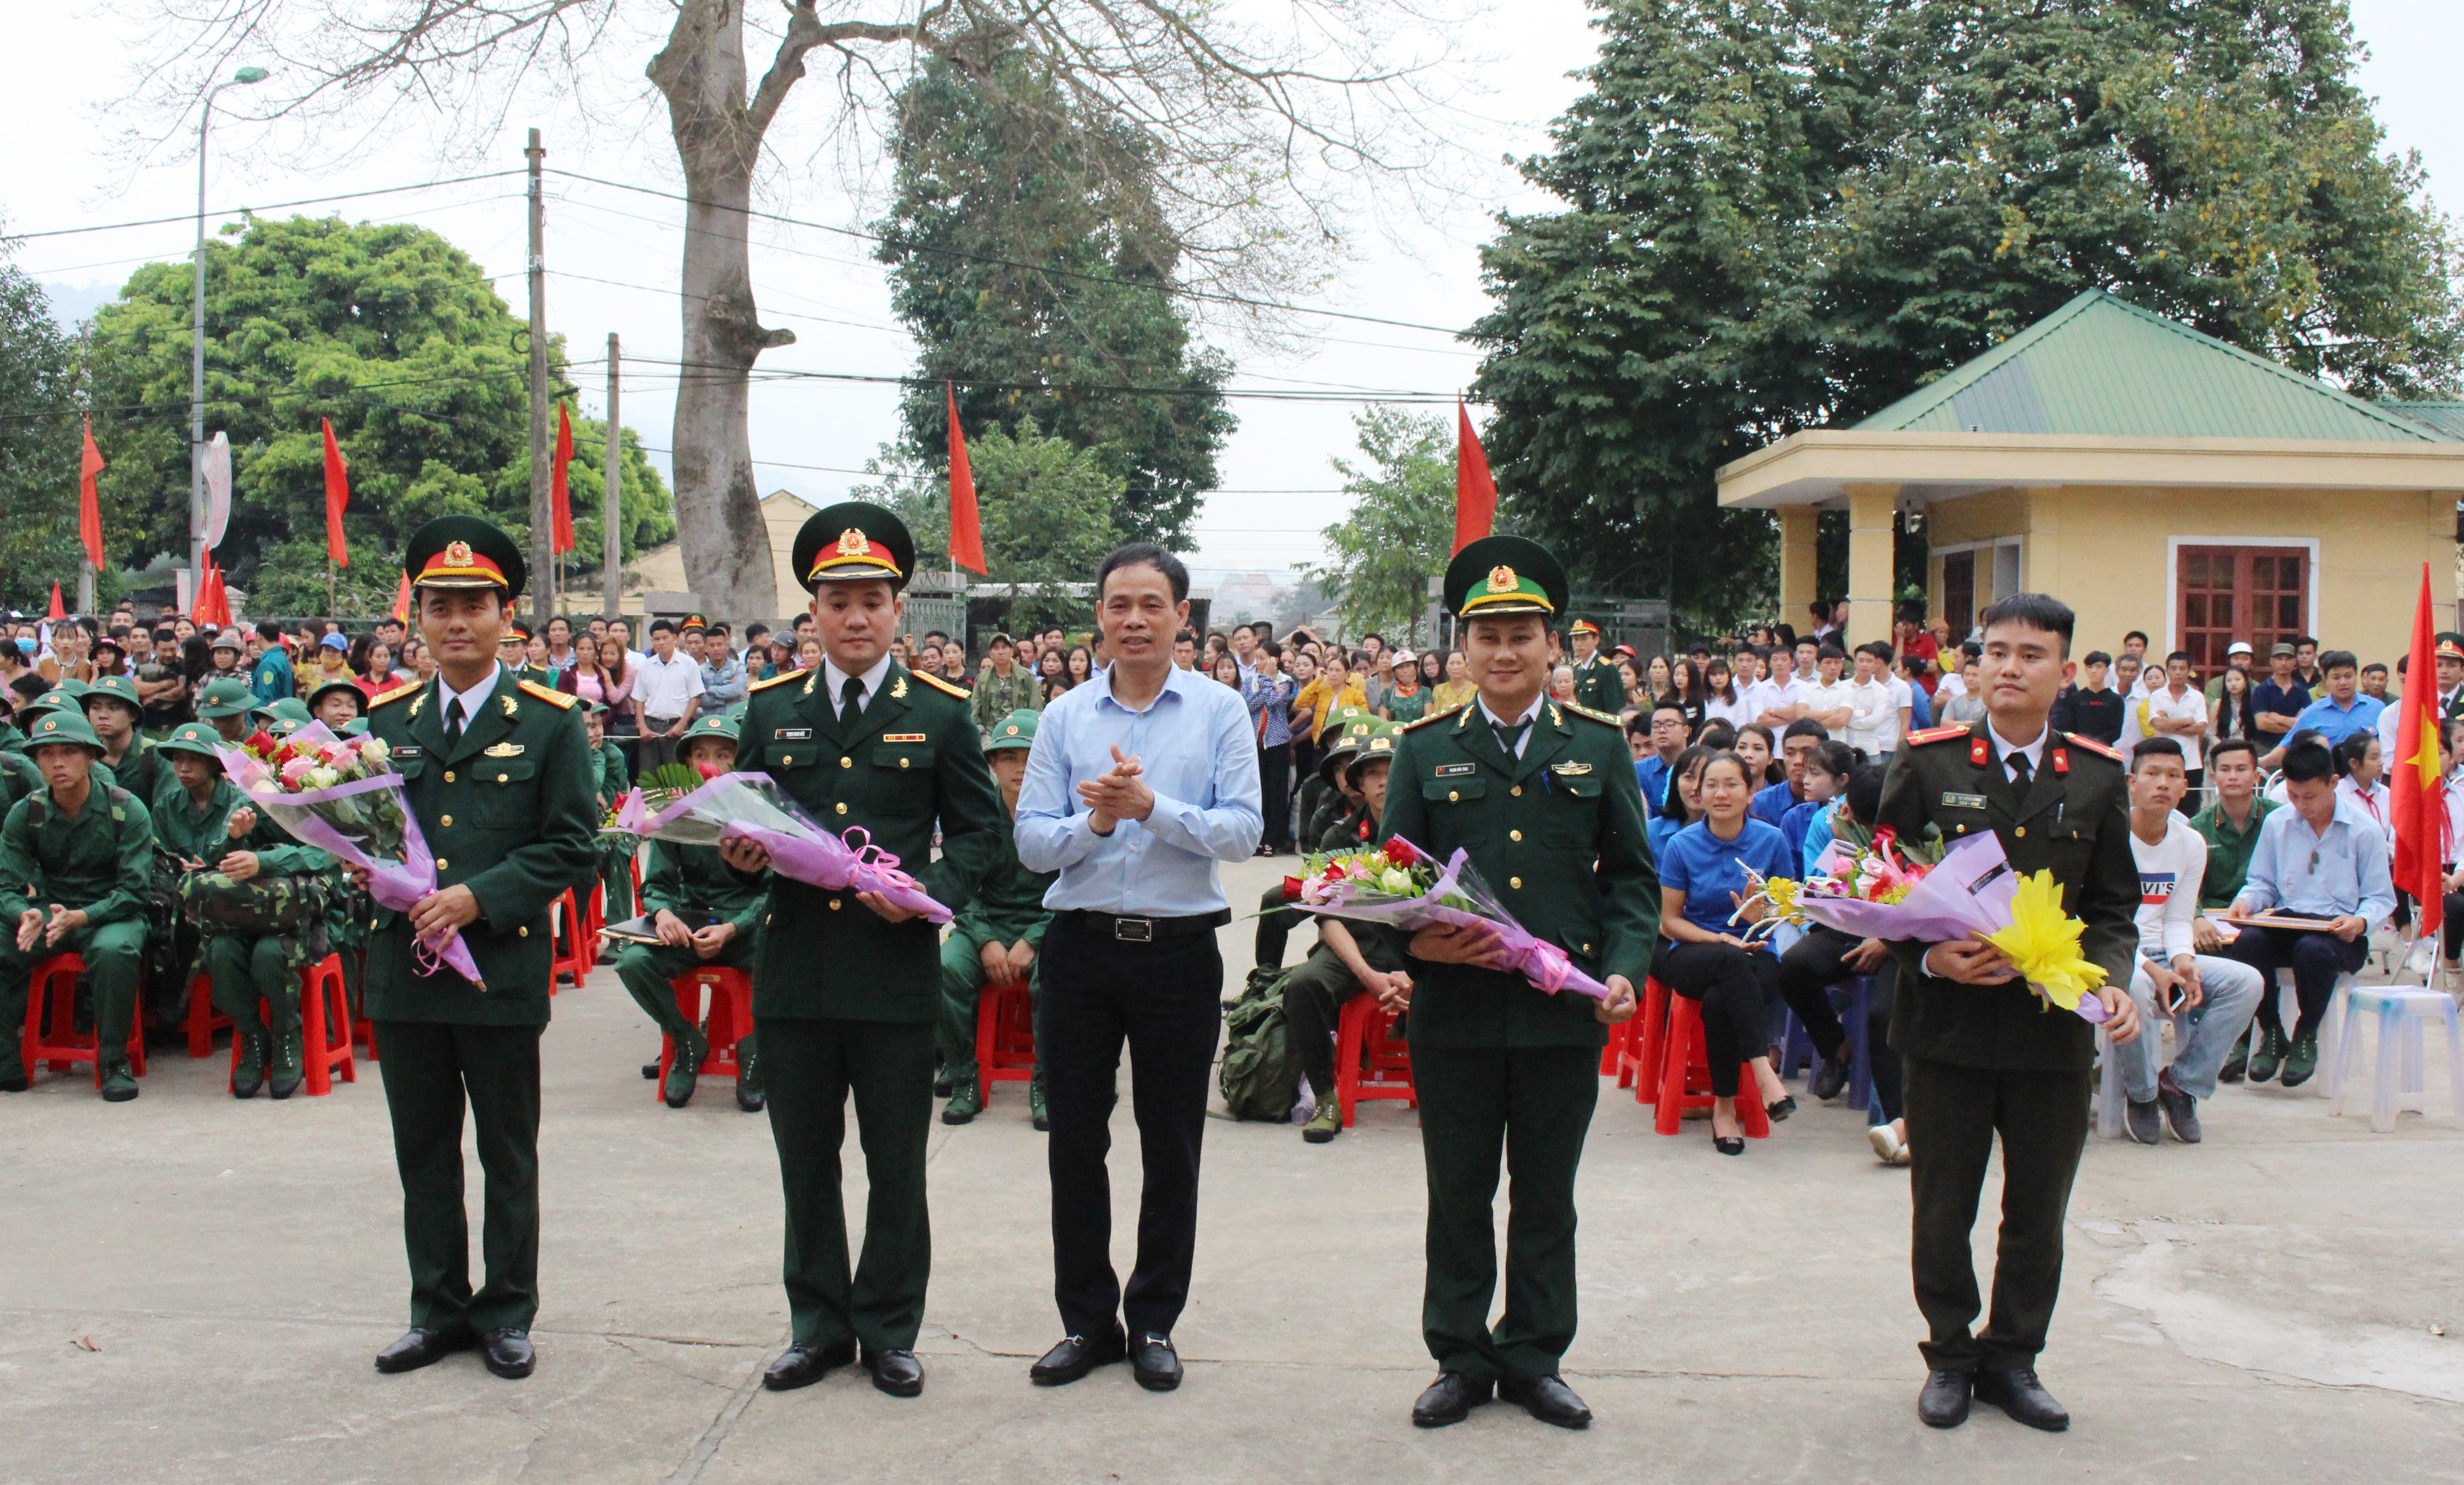 Đồng chí Nguyễn Đình Hòa - Ủy viên BCH Đảng bộ tỉnh, Bí thư Thị ủy tặng hoa cho các đơn vị nhận quân. Ảnh: Hoàng Thủy